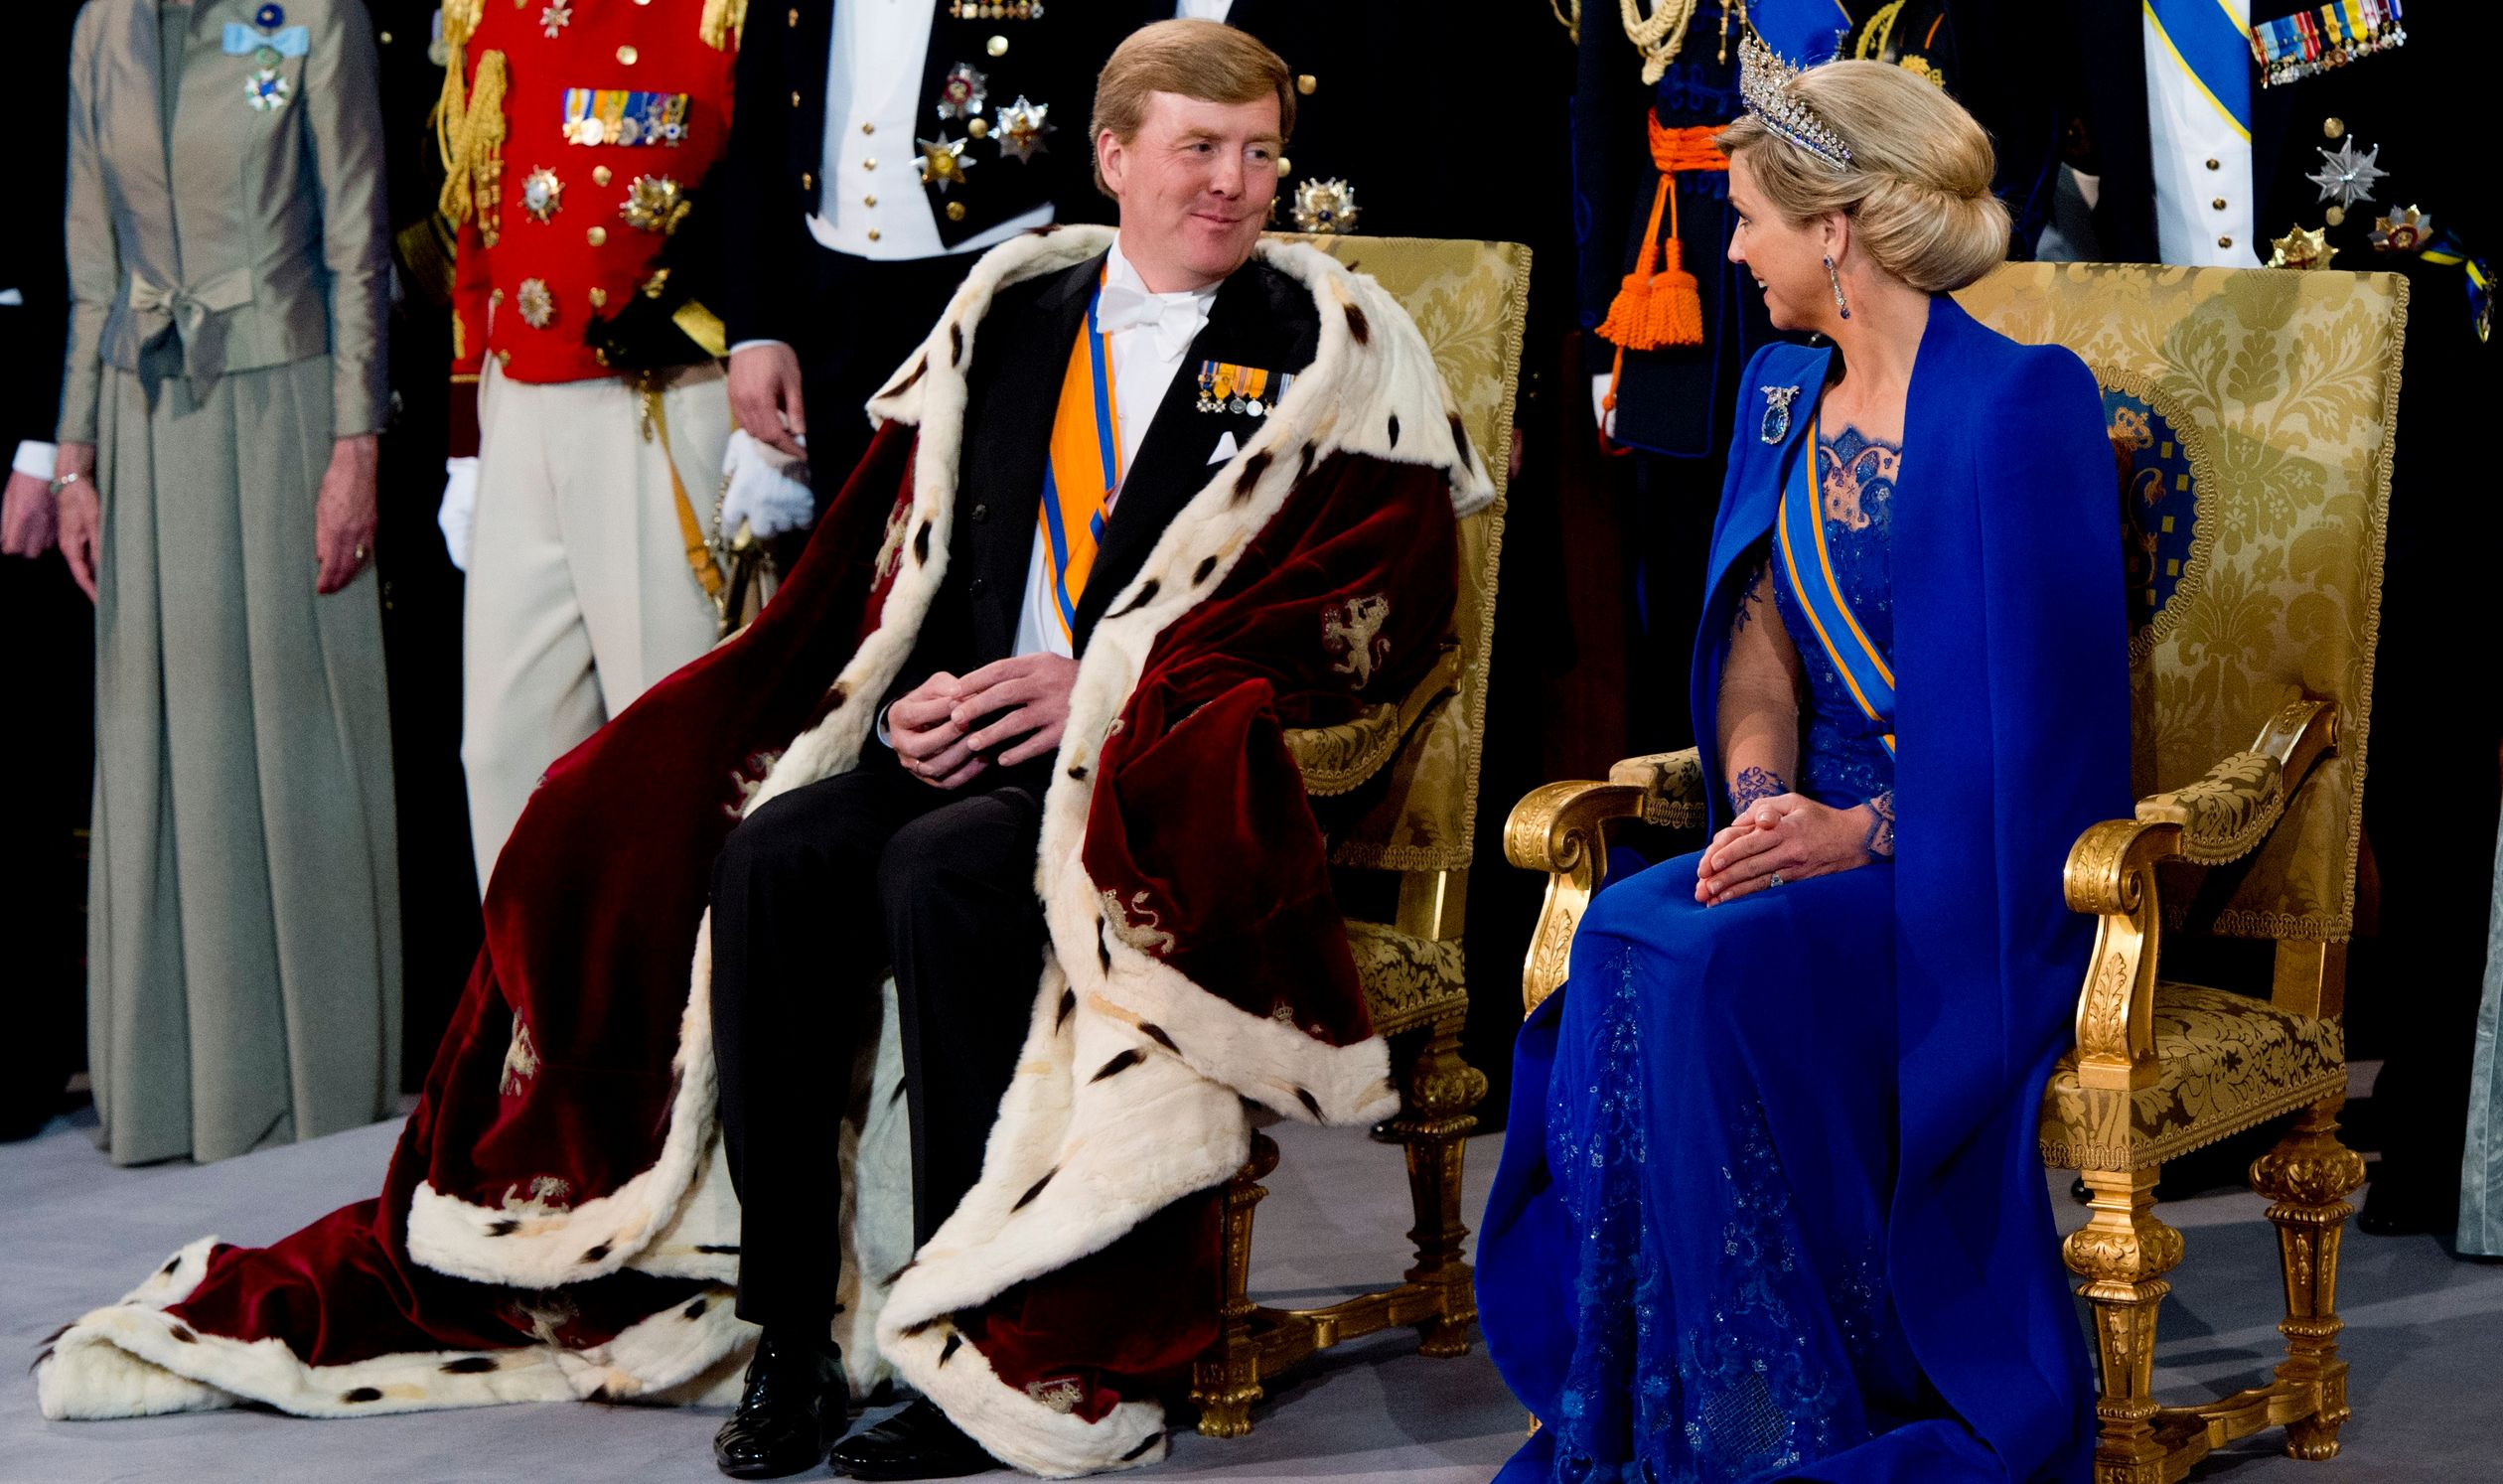 Koning Willem-Alexander en koningin Máxima tijdens de inhuldiging van de nieuwe vorst in De Nieuwe